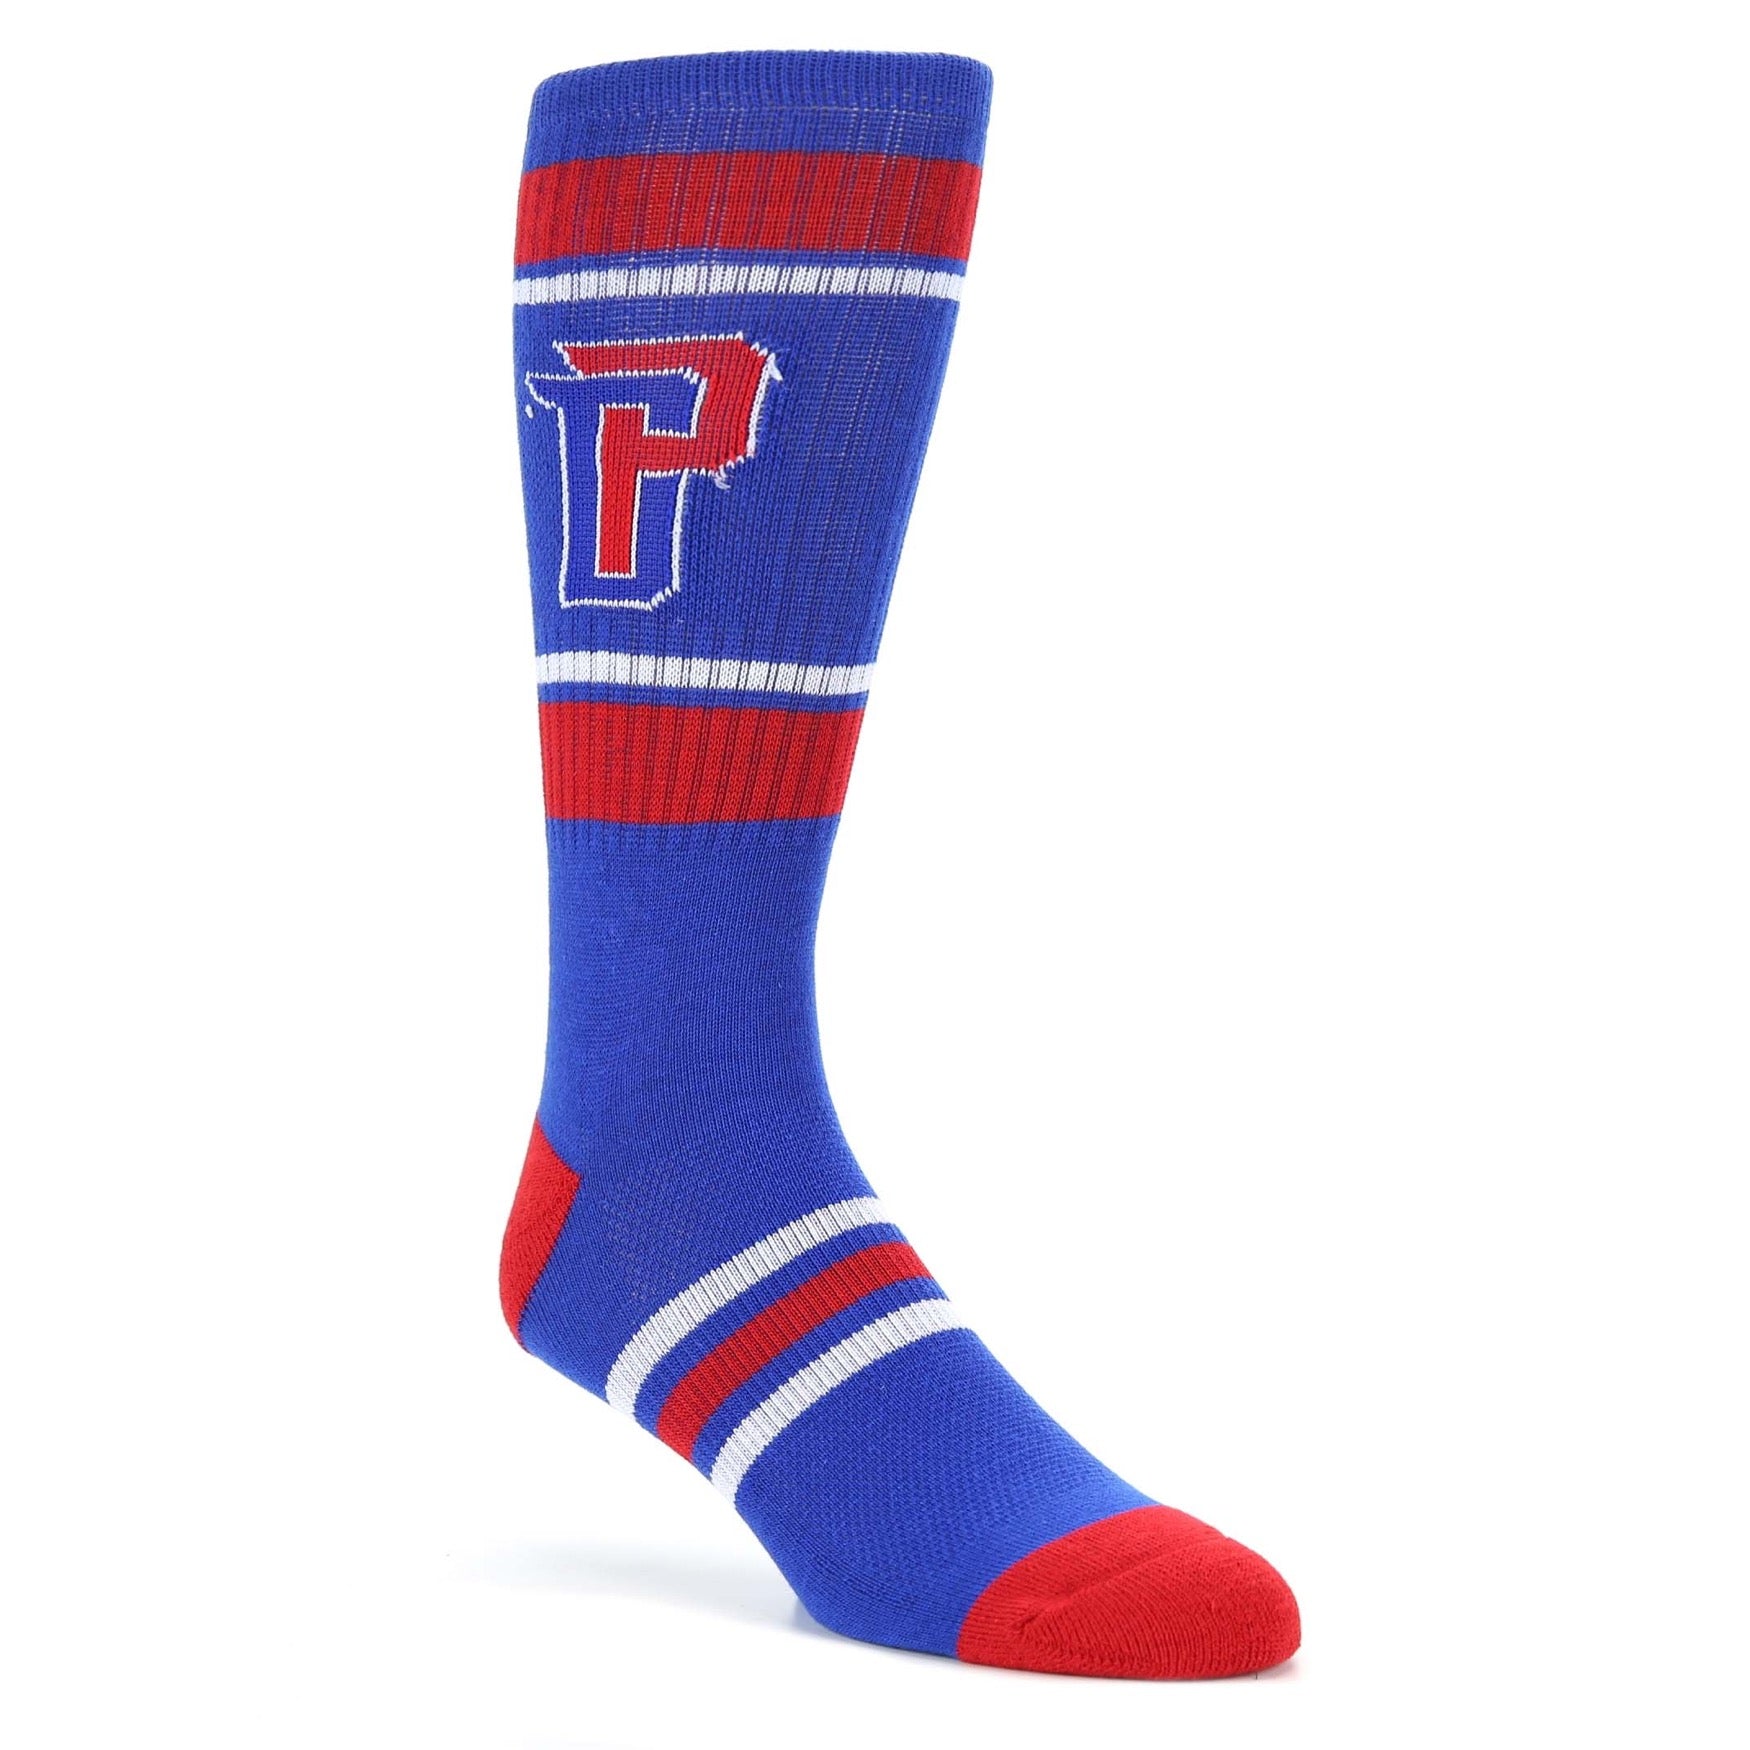 Detroit Pistons Socks - Men's Athletic Crew Socks